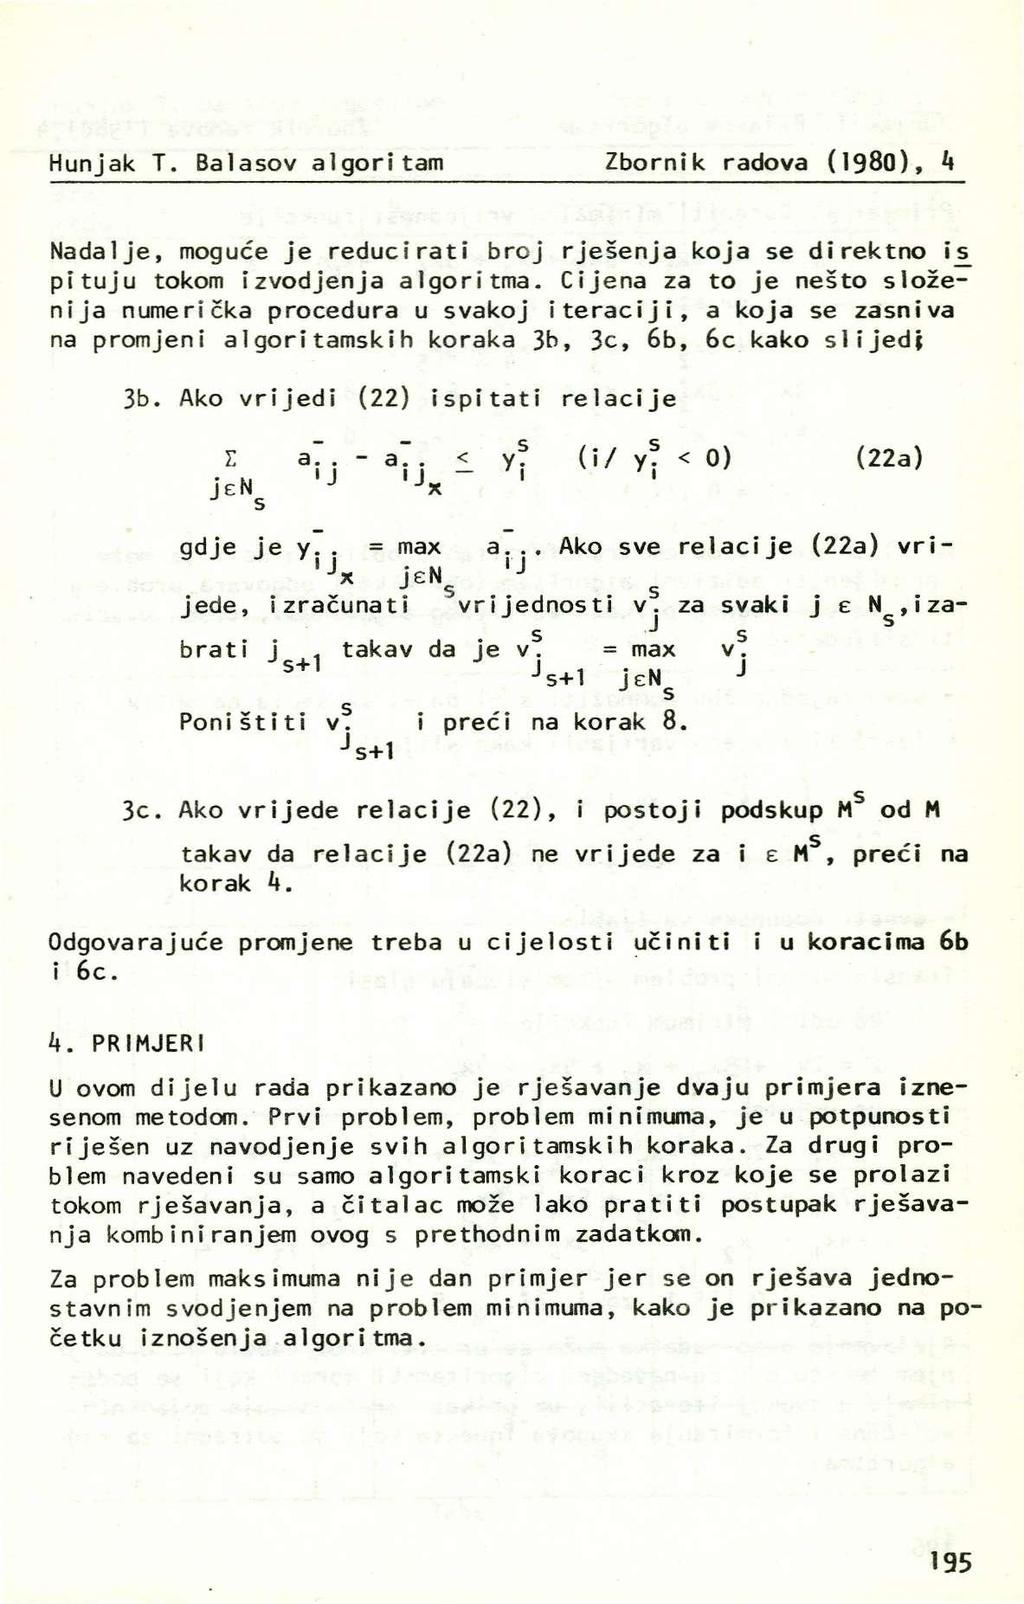 Hunjak T. Balaov algoritam Zbornik radova (198), k Nadalje, moguće je reducirati broj rješenja koja e direktno i pituju tokom izvodjenja algoritma.